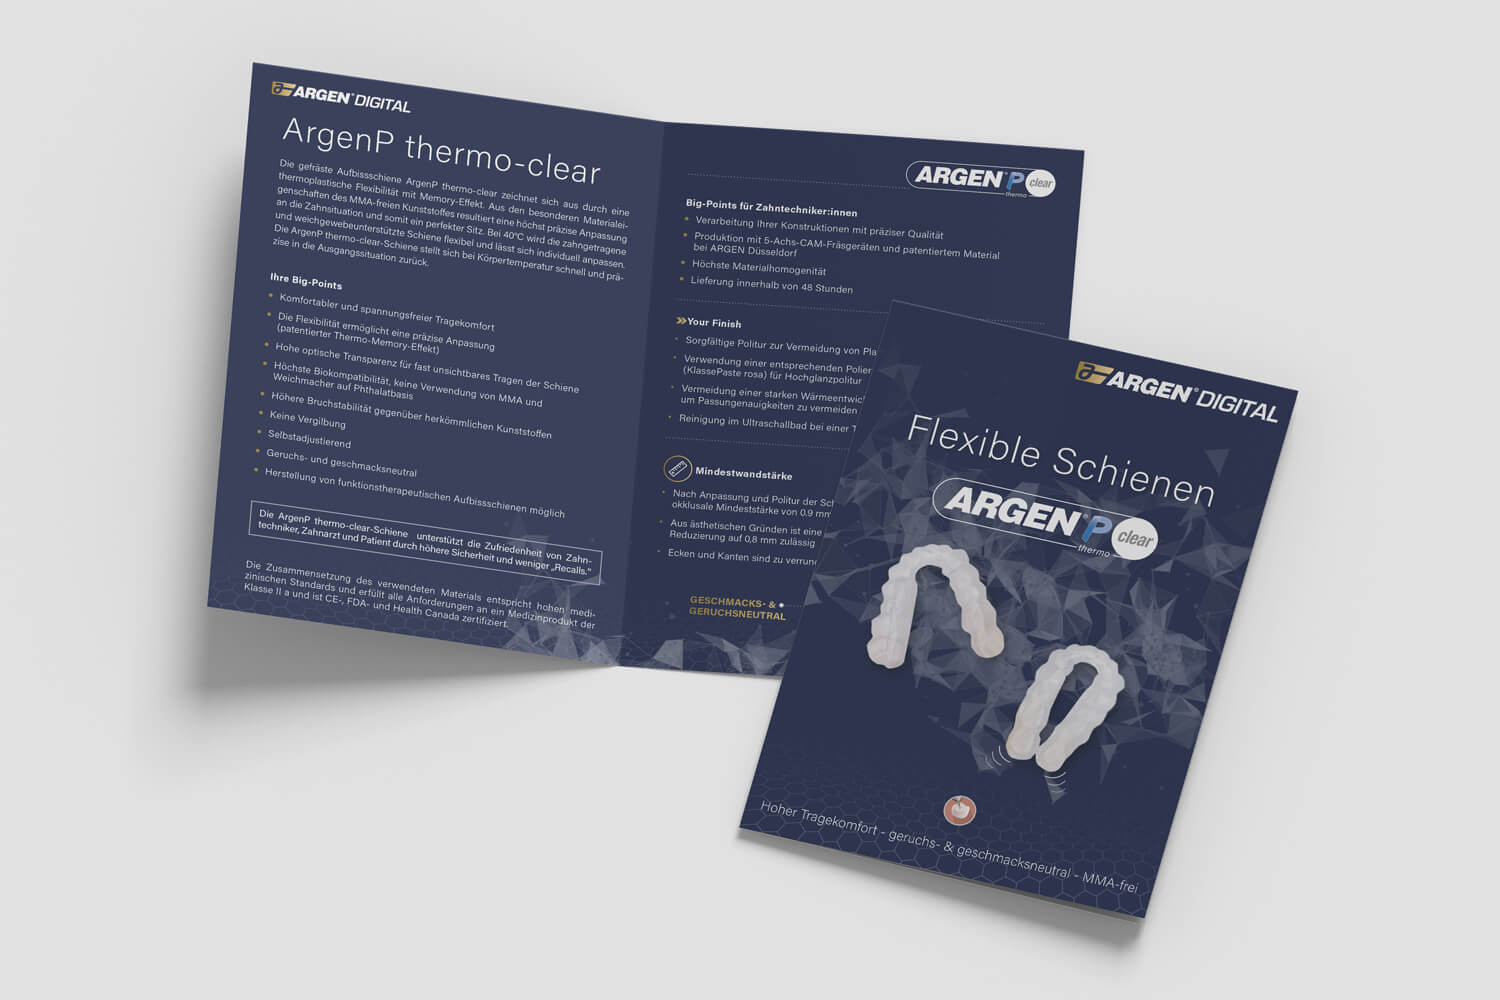 ARGEN Dental GmbH - News - ArgenP thermo-clear - Flexible Schienen